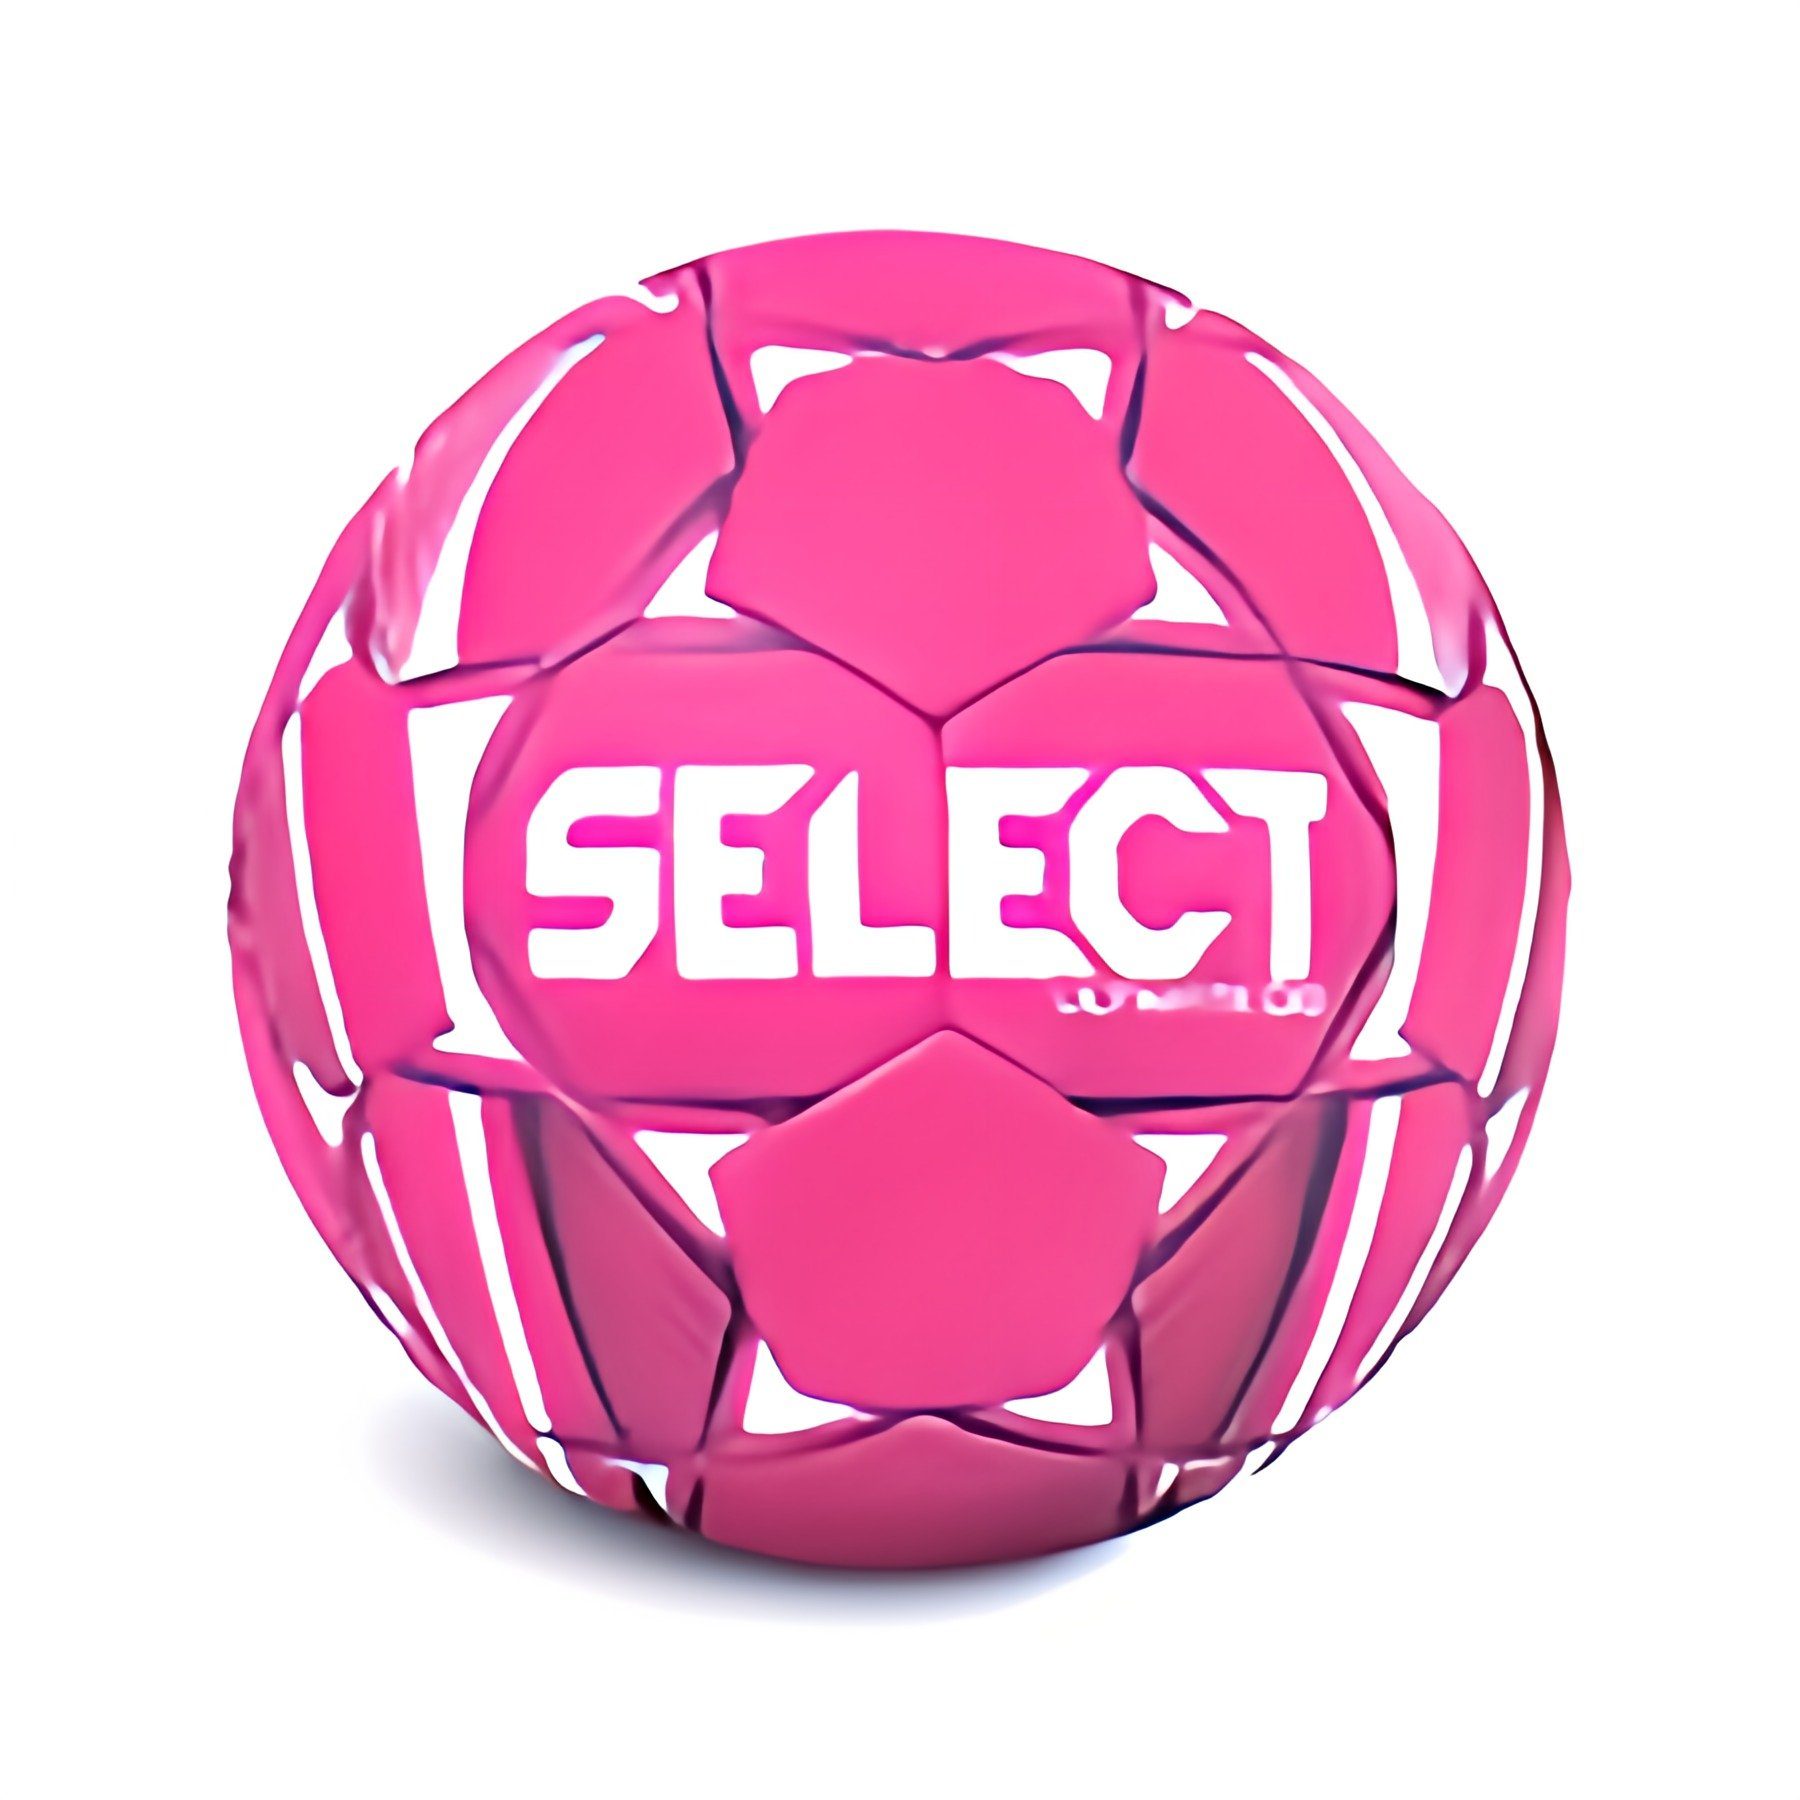 Select Sport Handball Ultimate HBF Handball - Grösse 2